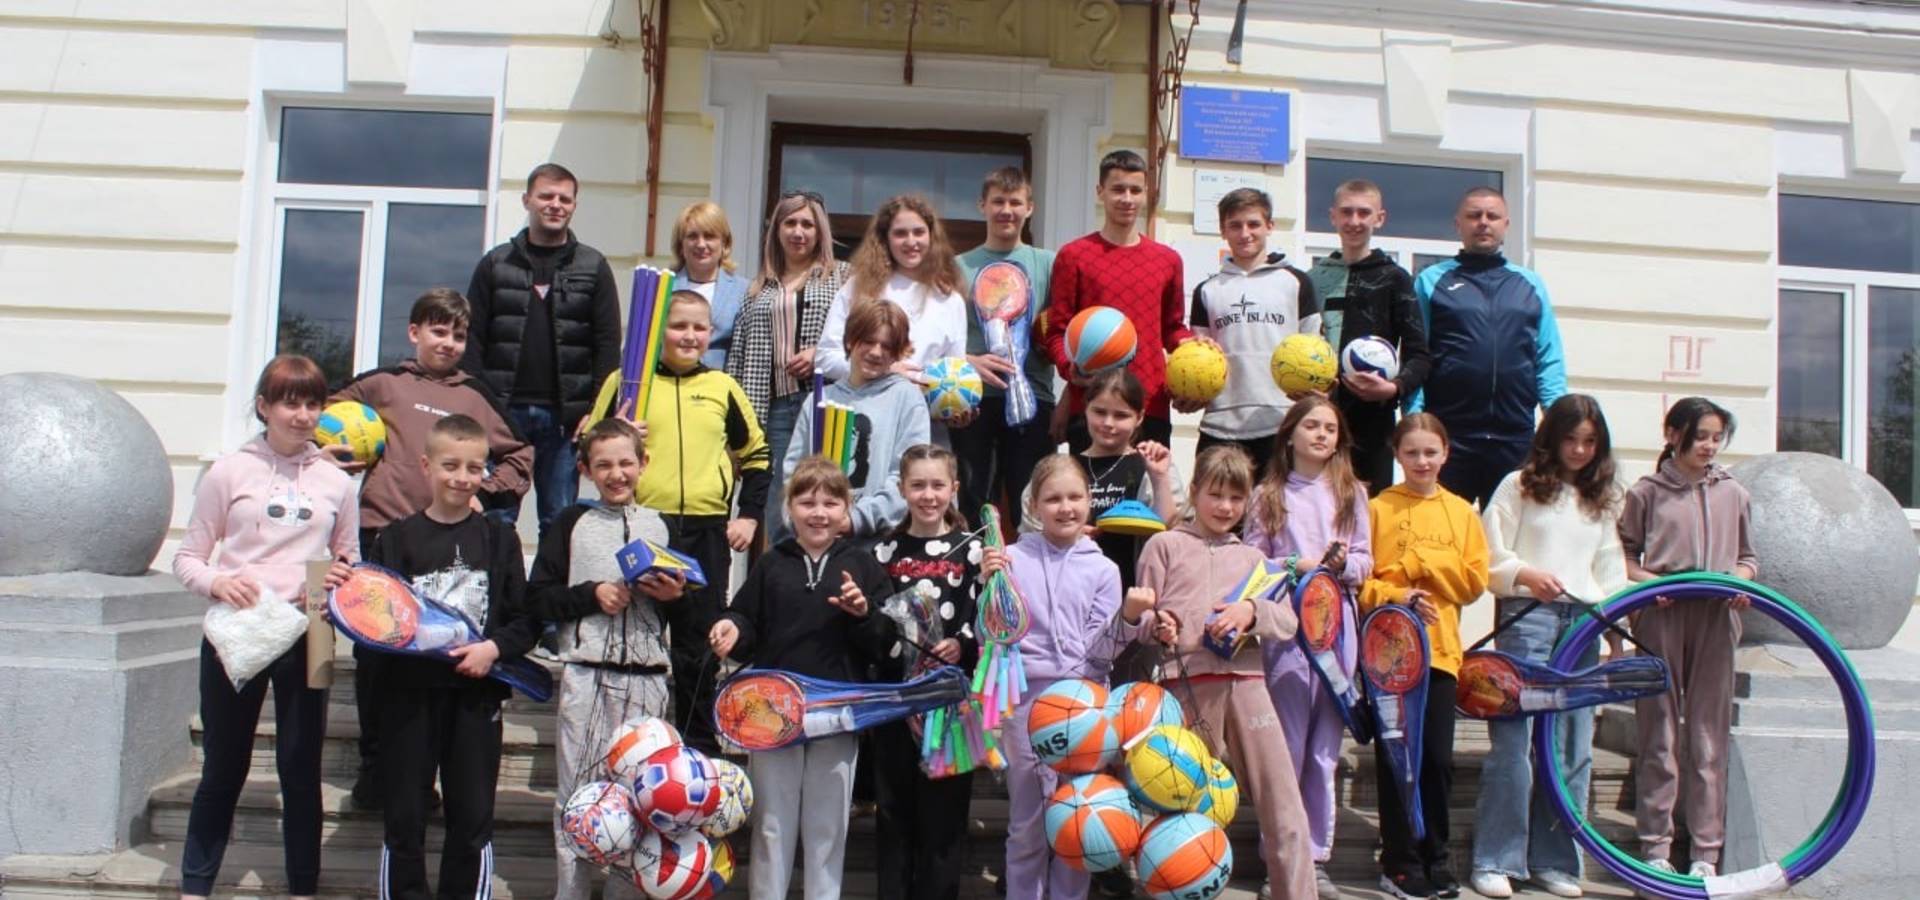 Вже сім ліцеїв Хмільницького району отримали спортінвентар від благодійного фонду Миколи Філонова